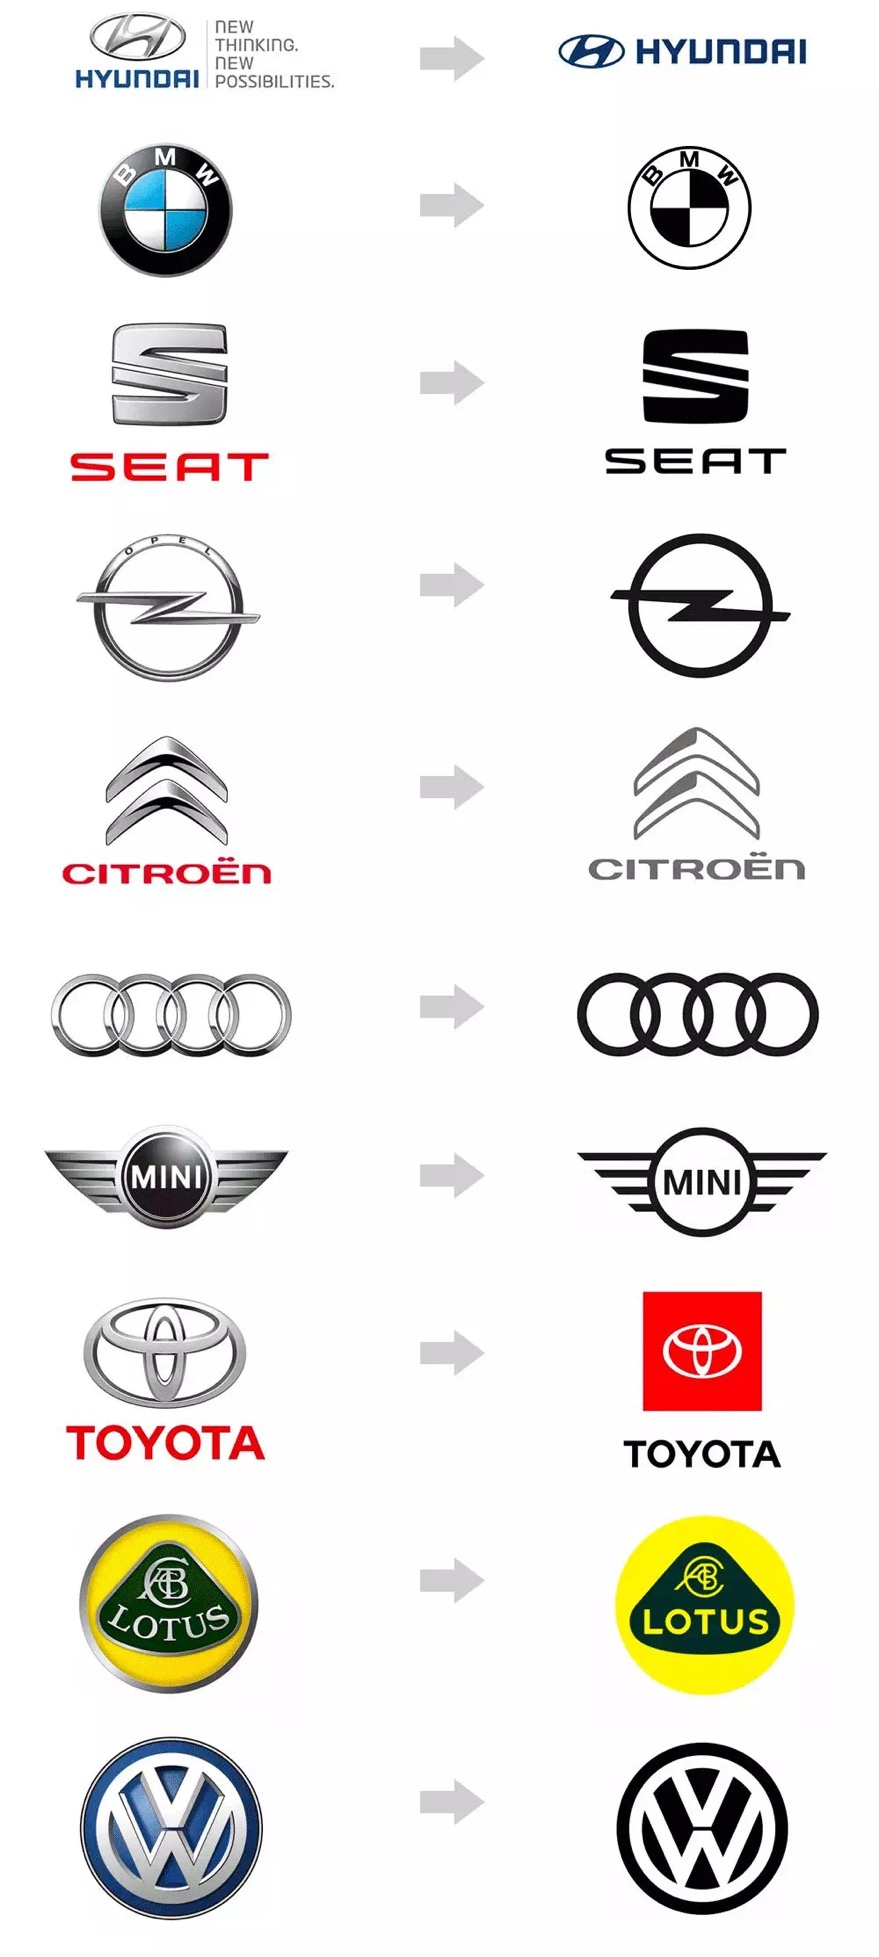 刚刚宝马换新logo成为史上最透明车标